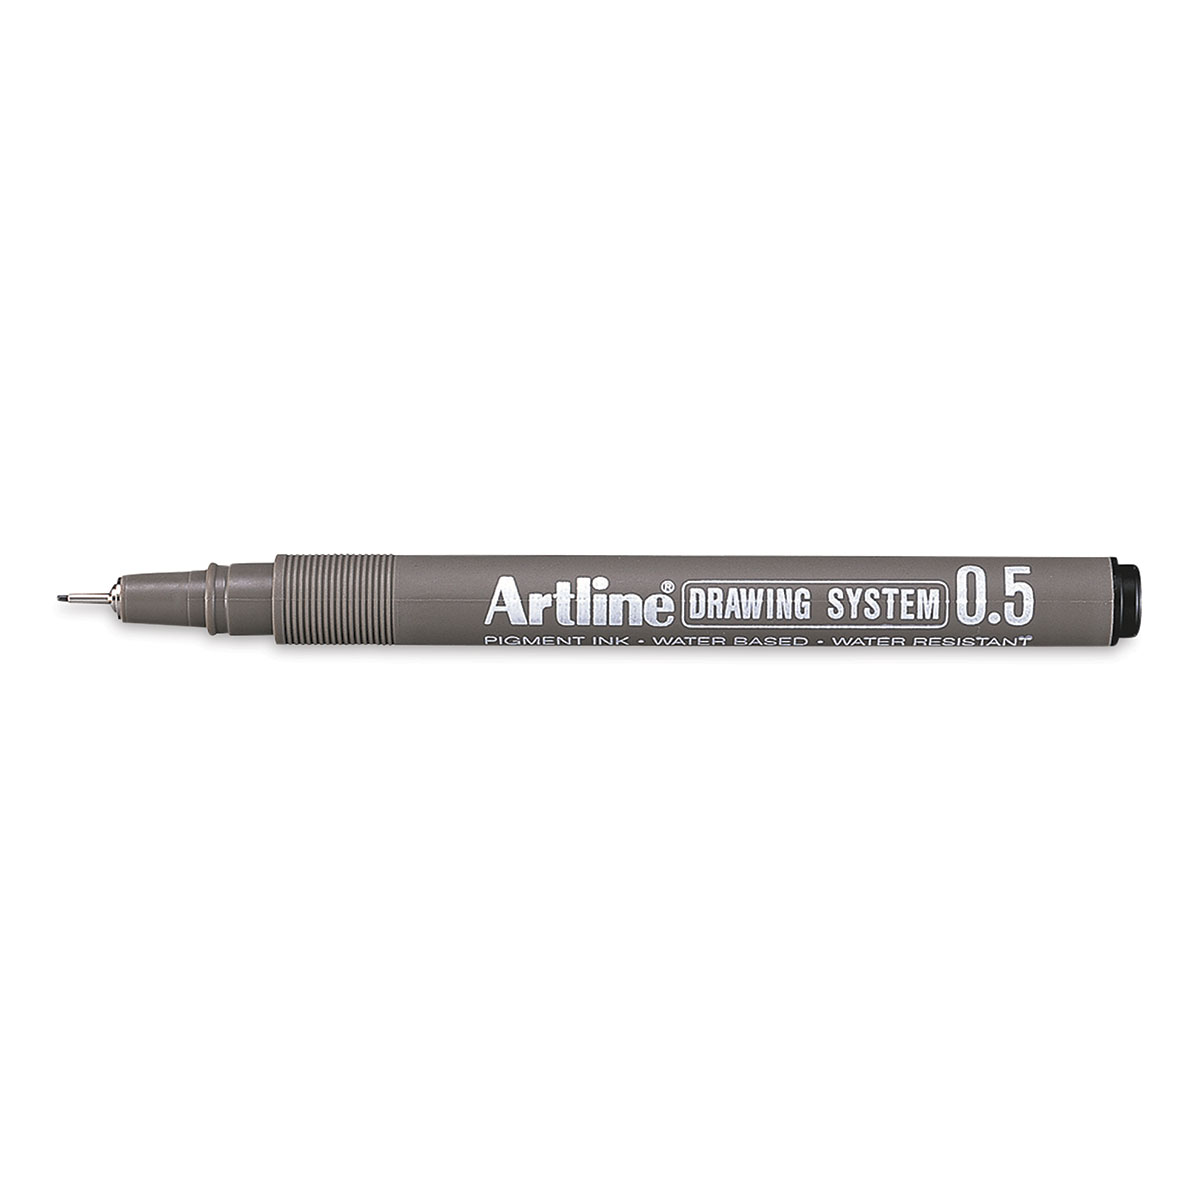 Artline Drawing System Pens Black 6 Pack